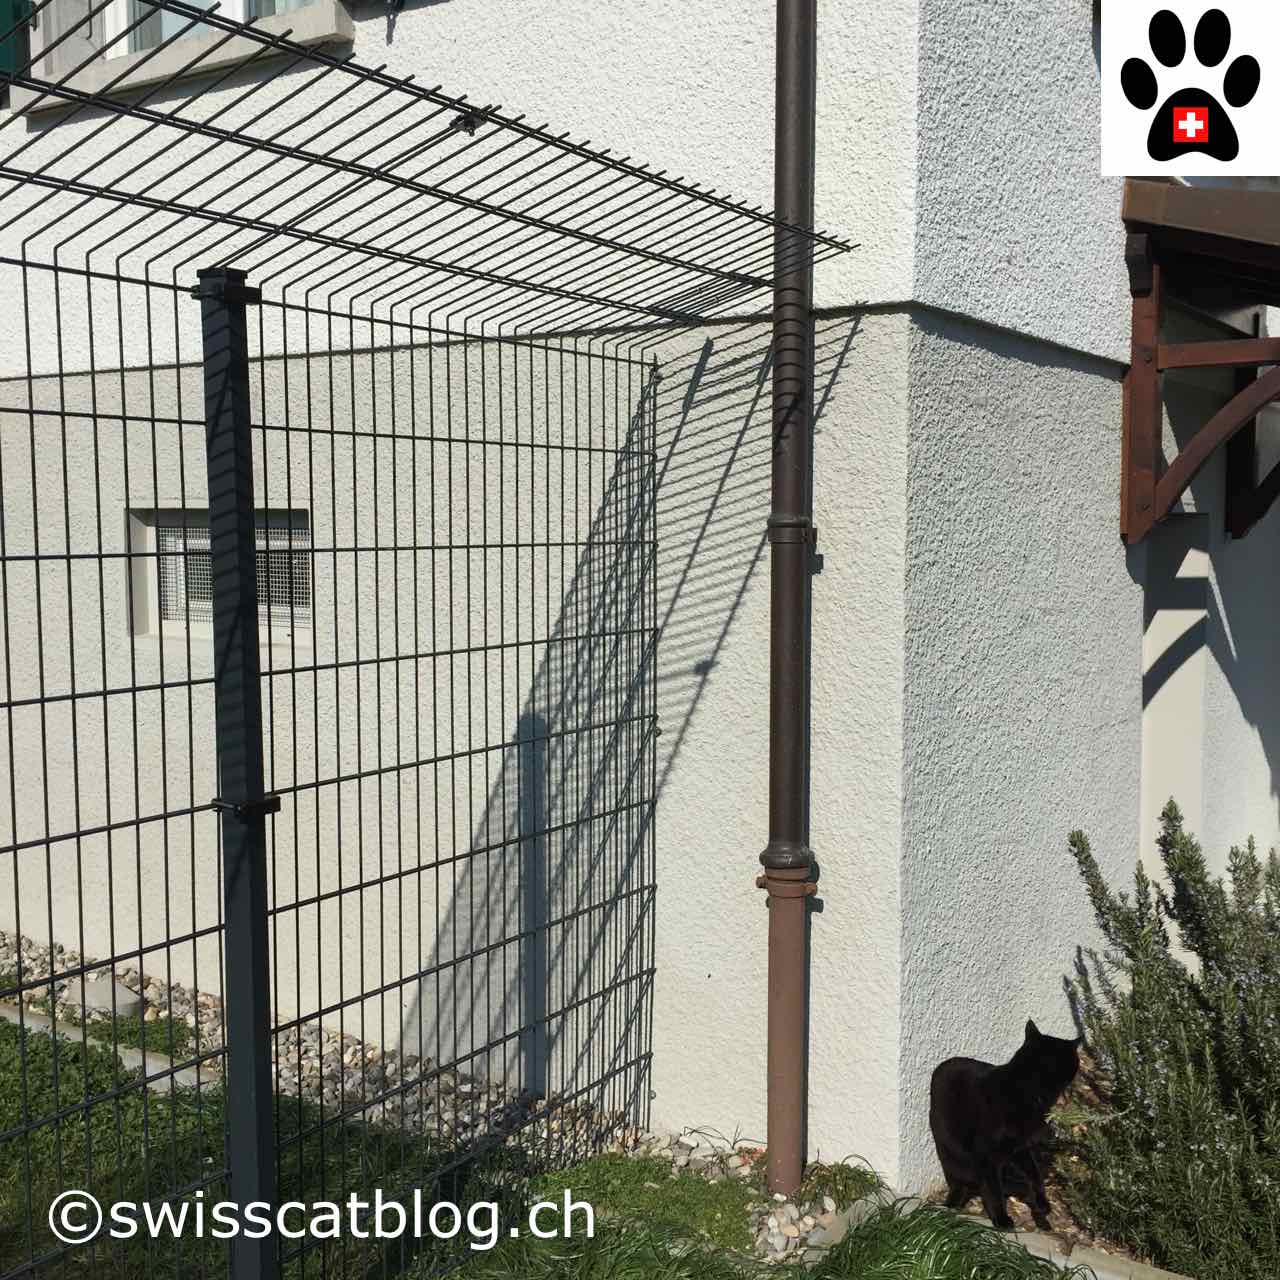 Comment Cloturer Mon Jardin Pour Que Mes Chats Puissent Aller Dehors En Toute Securite The Swiss Cats